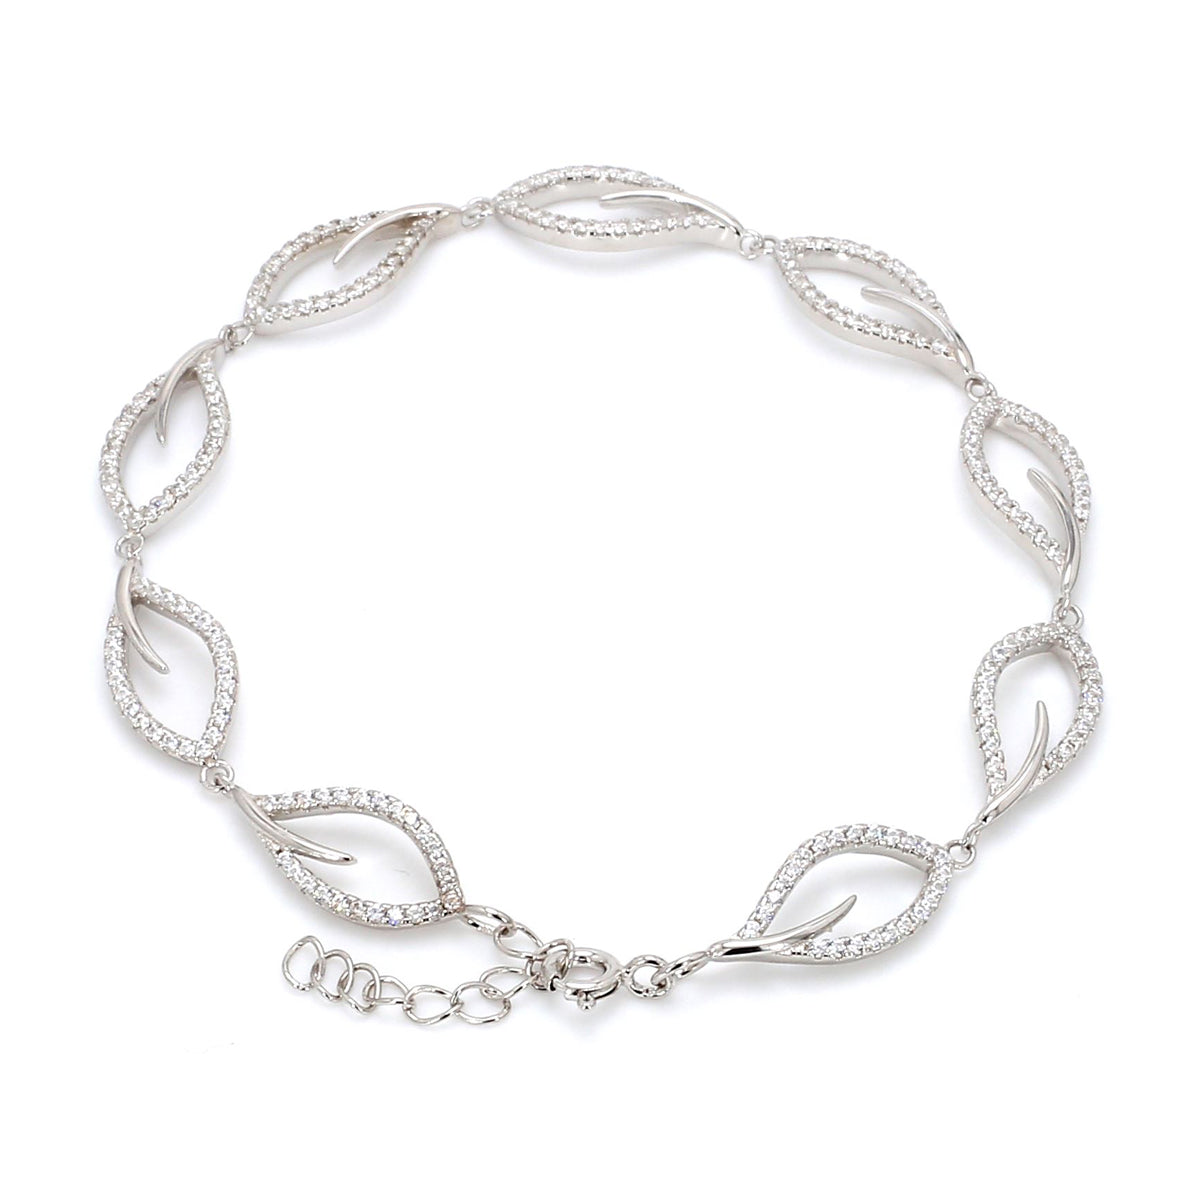 Silver Bracelets for Women Online | Ornate Jewels